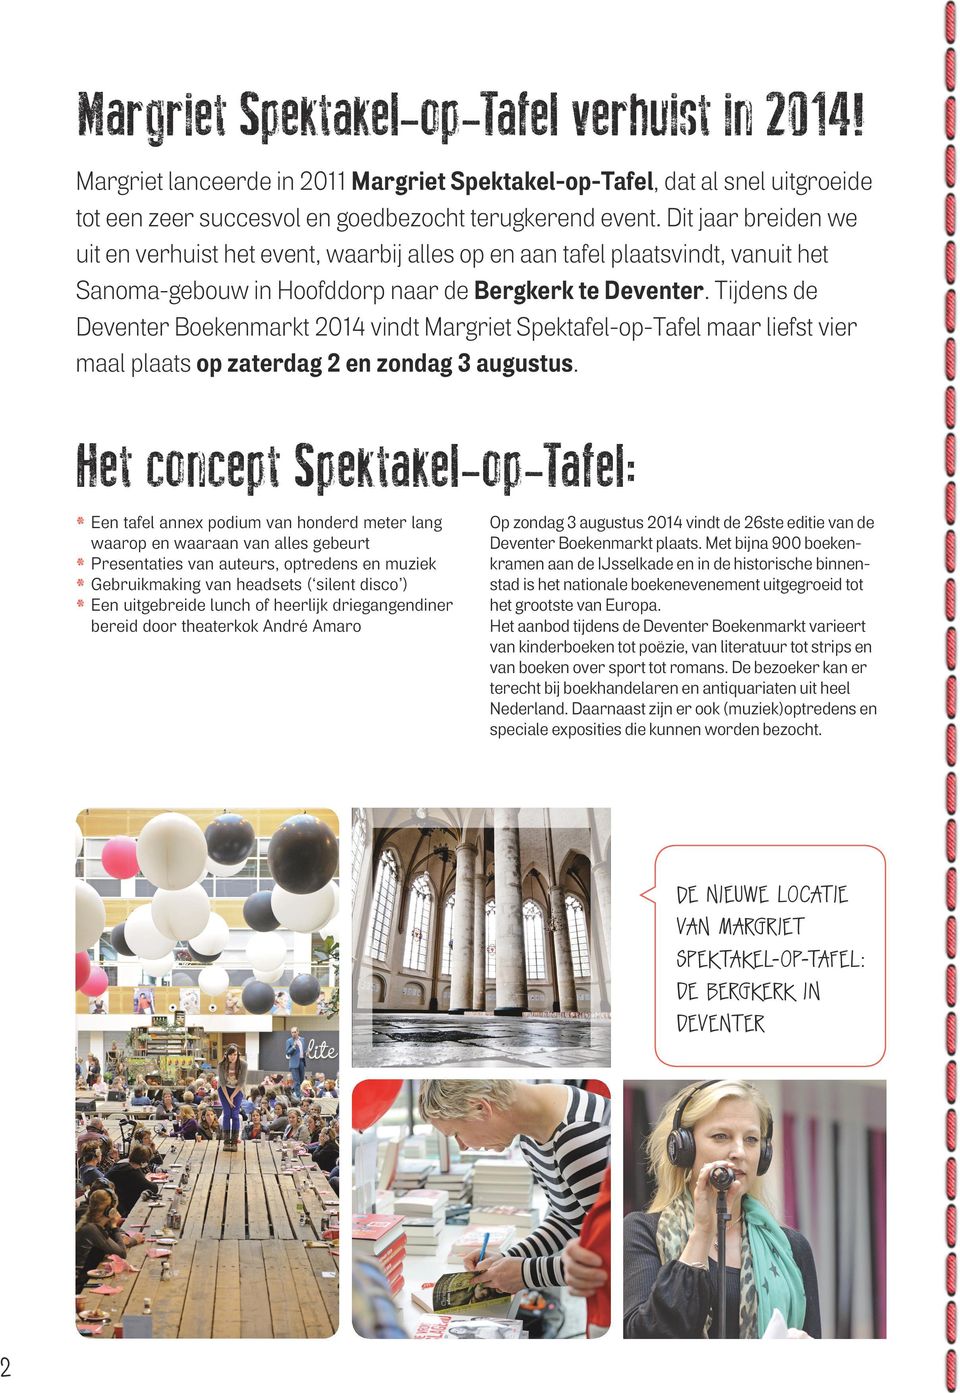 Tijdens de Deventer Boekenmarkt 2014 vindt Margriet Spektafel-op-Tafel maar liefst vier maal plaats op zaterdag 2 en zondag 3 augustus.